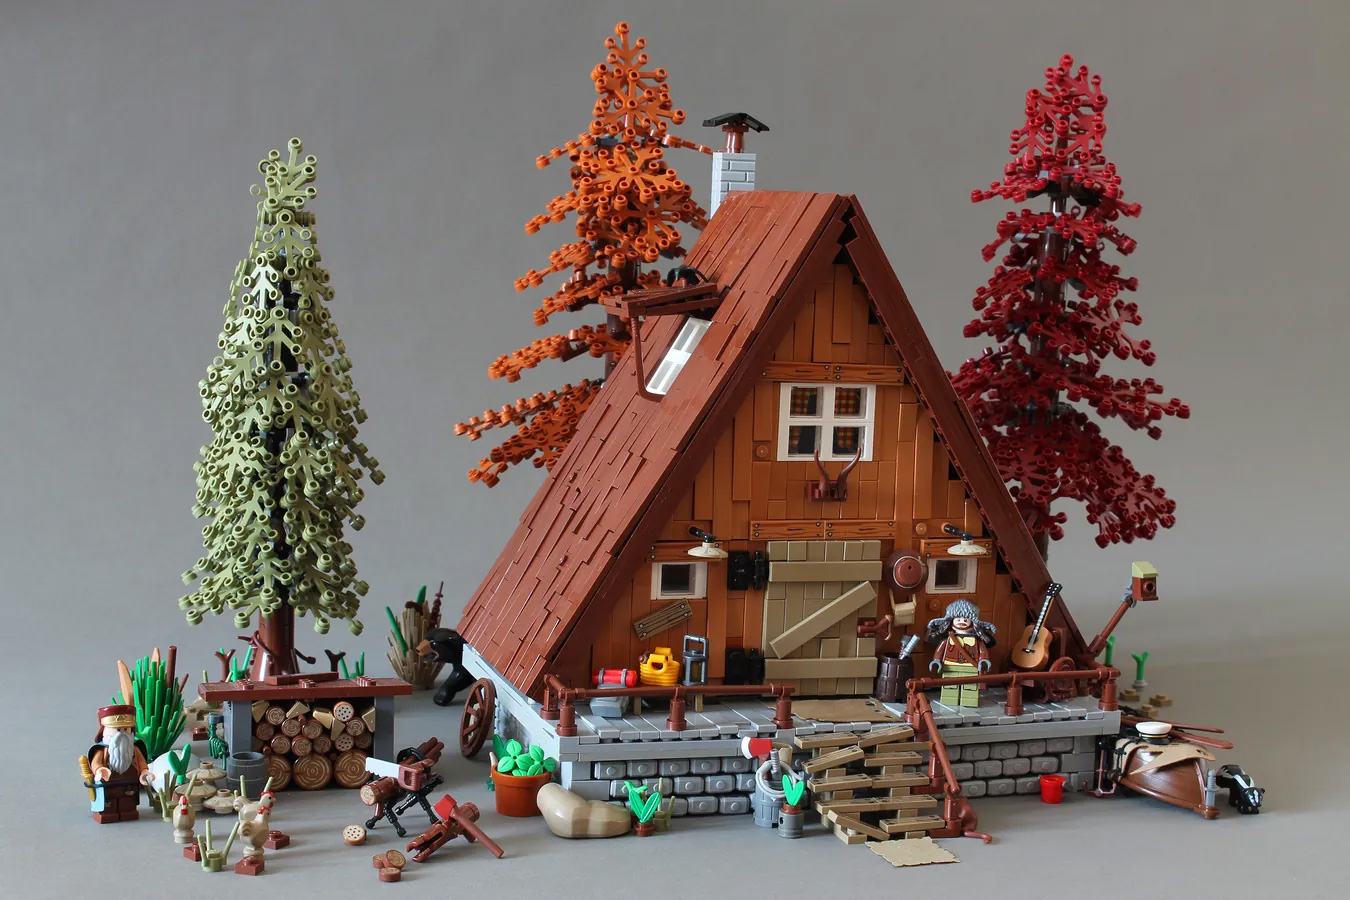 Cette maison entièrement décorée sur le thème des Lego vous fera rêver